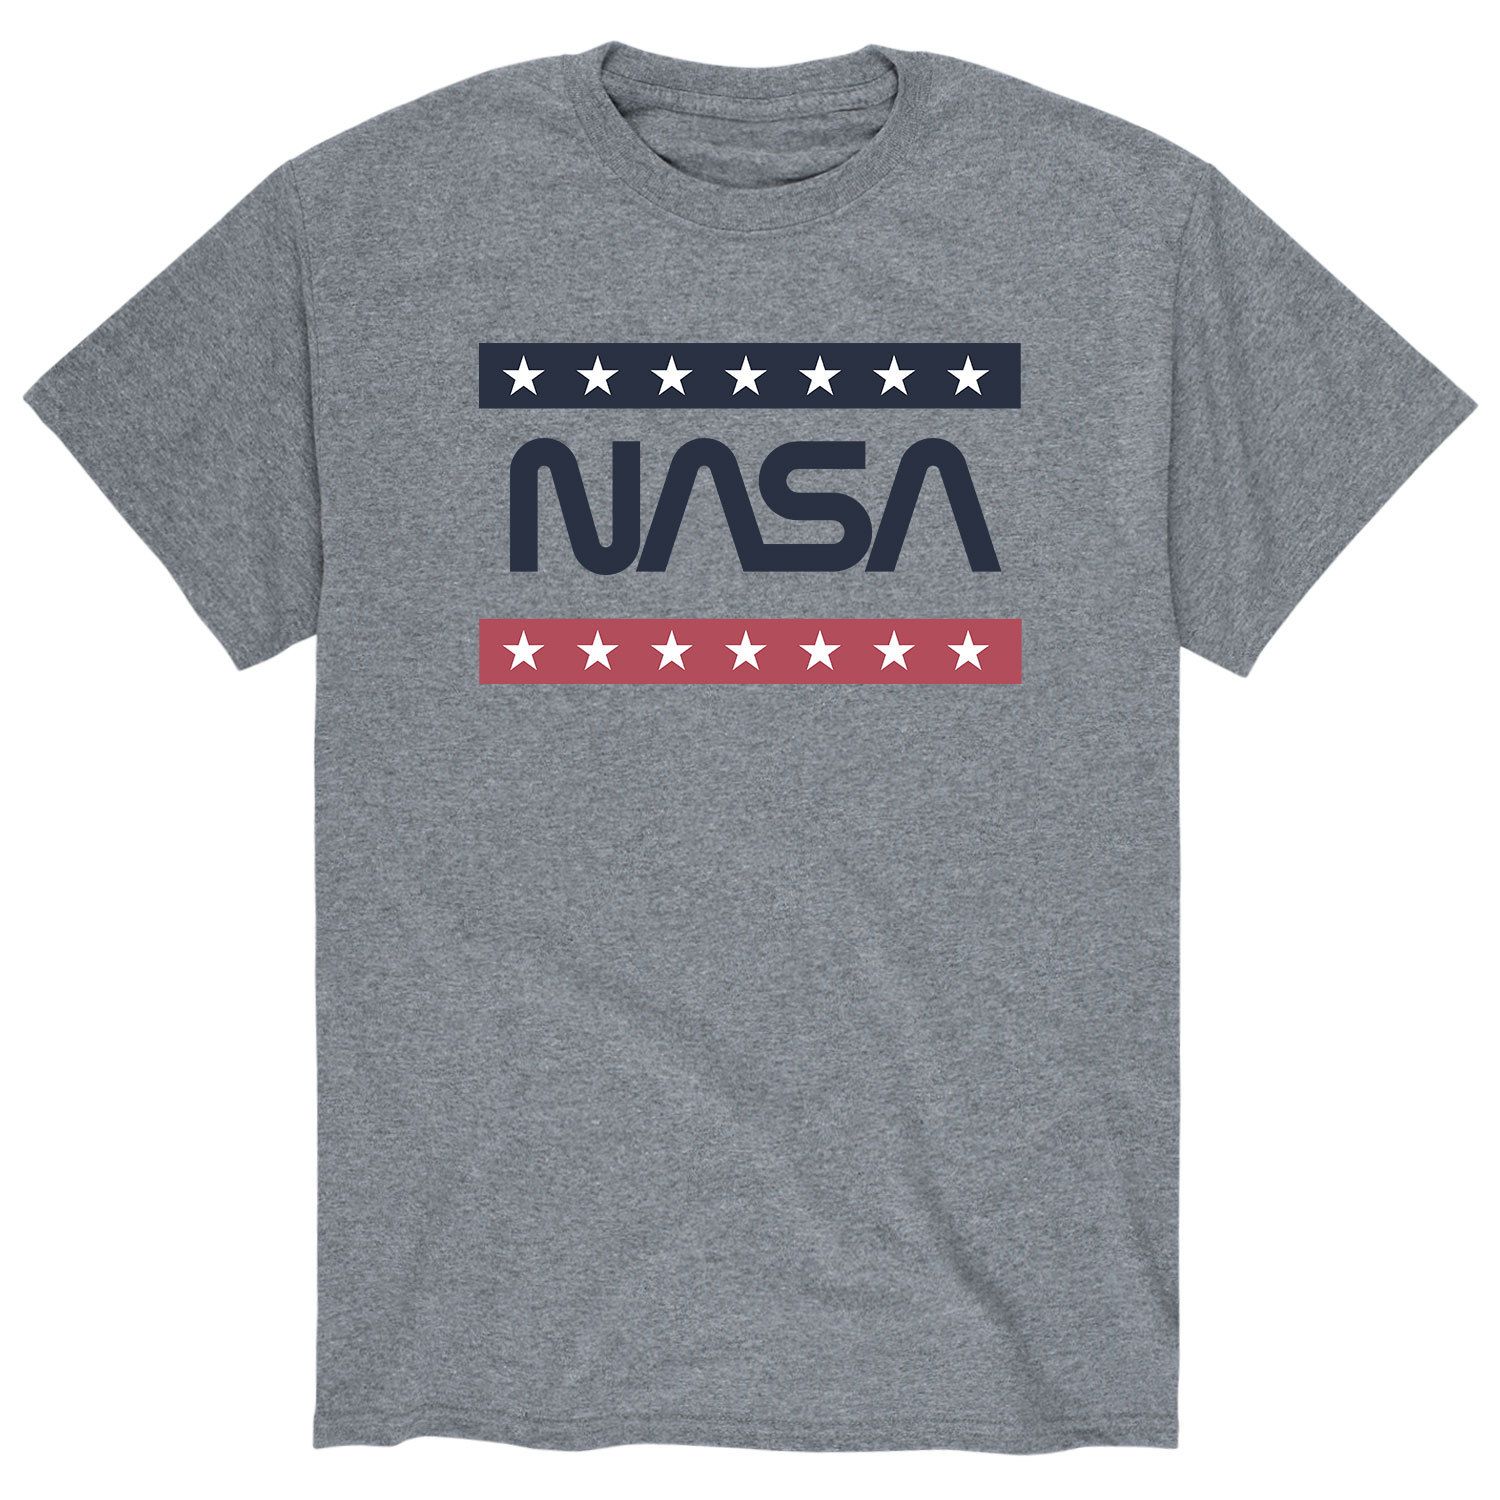 цена Мужская футболка NASA Americana Licensed Character